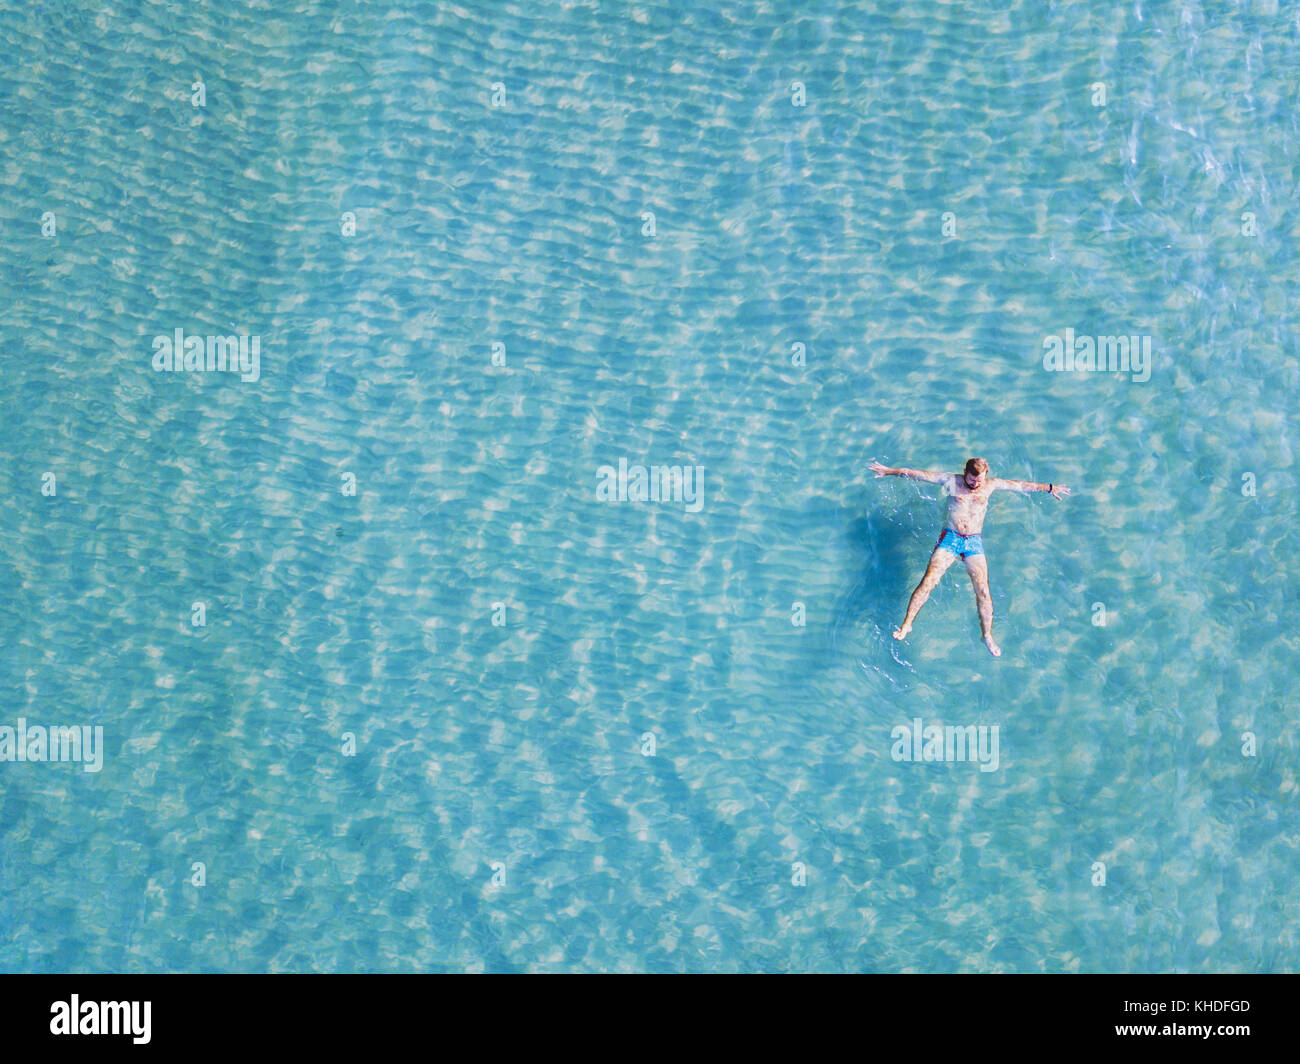 L'homme nage dans l'eau turquoise à partir de ci-dessus, vue de dessus de l'étoile dans la mer sur la plage paradise with copy space Banque D'Images